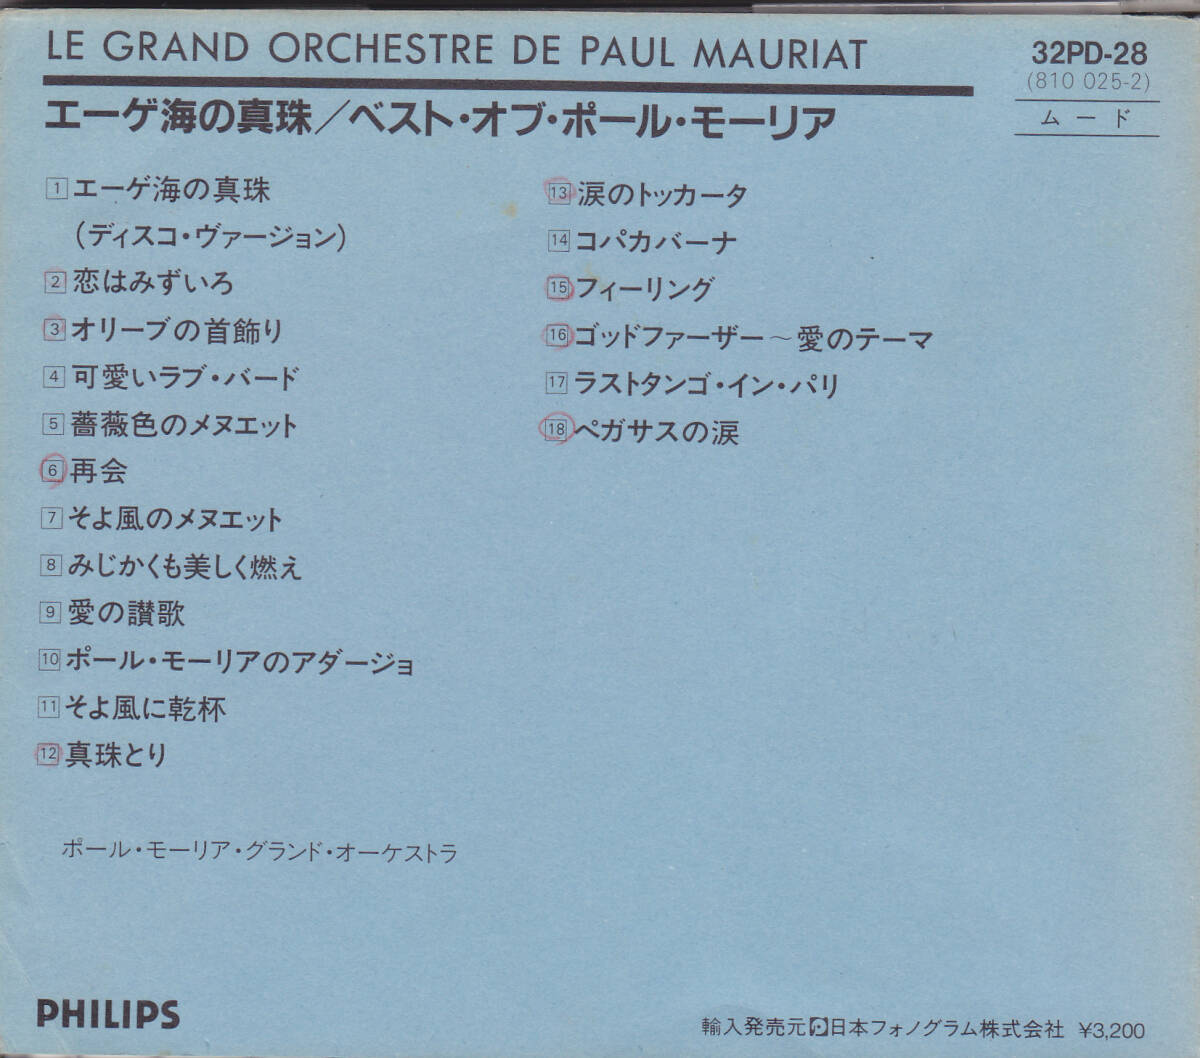 CD ポール・モーリア - エーゲ海の真珠 ベスト・オブ・ポール・モーリア - 帯付き 32PD-28 西独盤 810 025-2_画像2